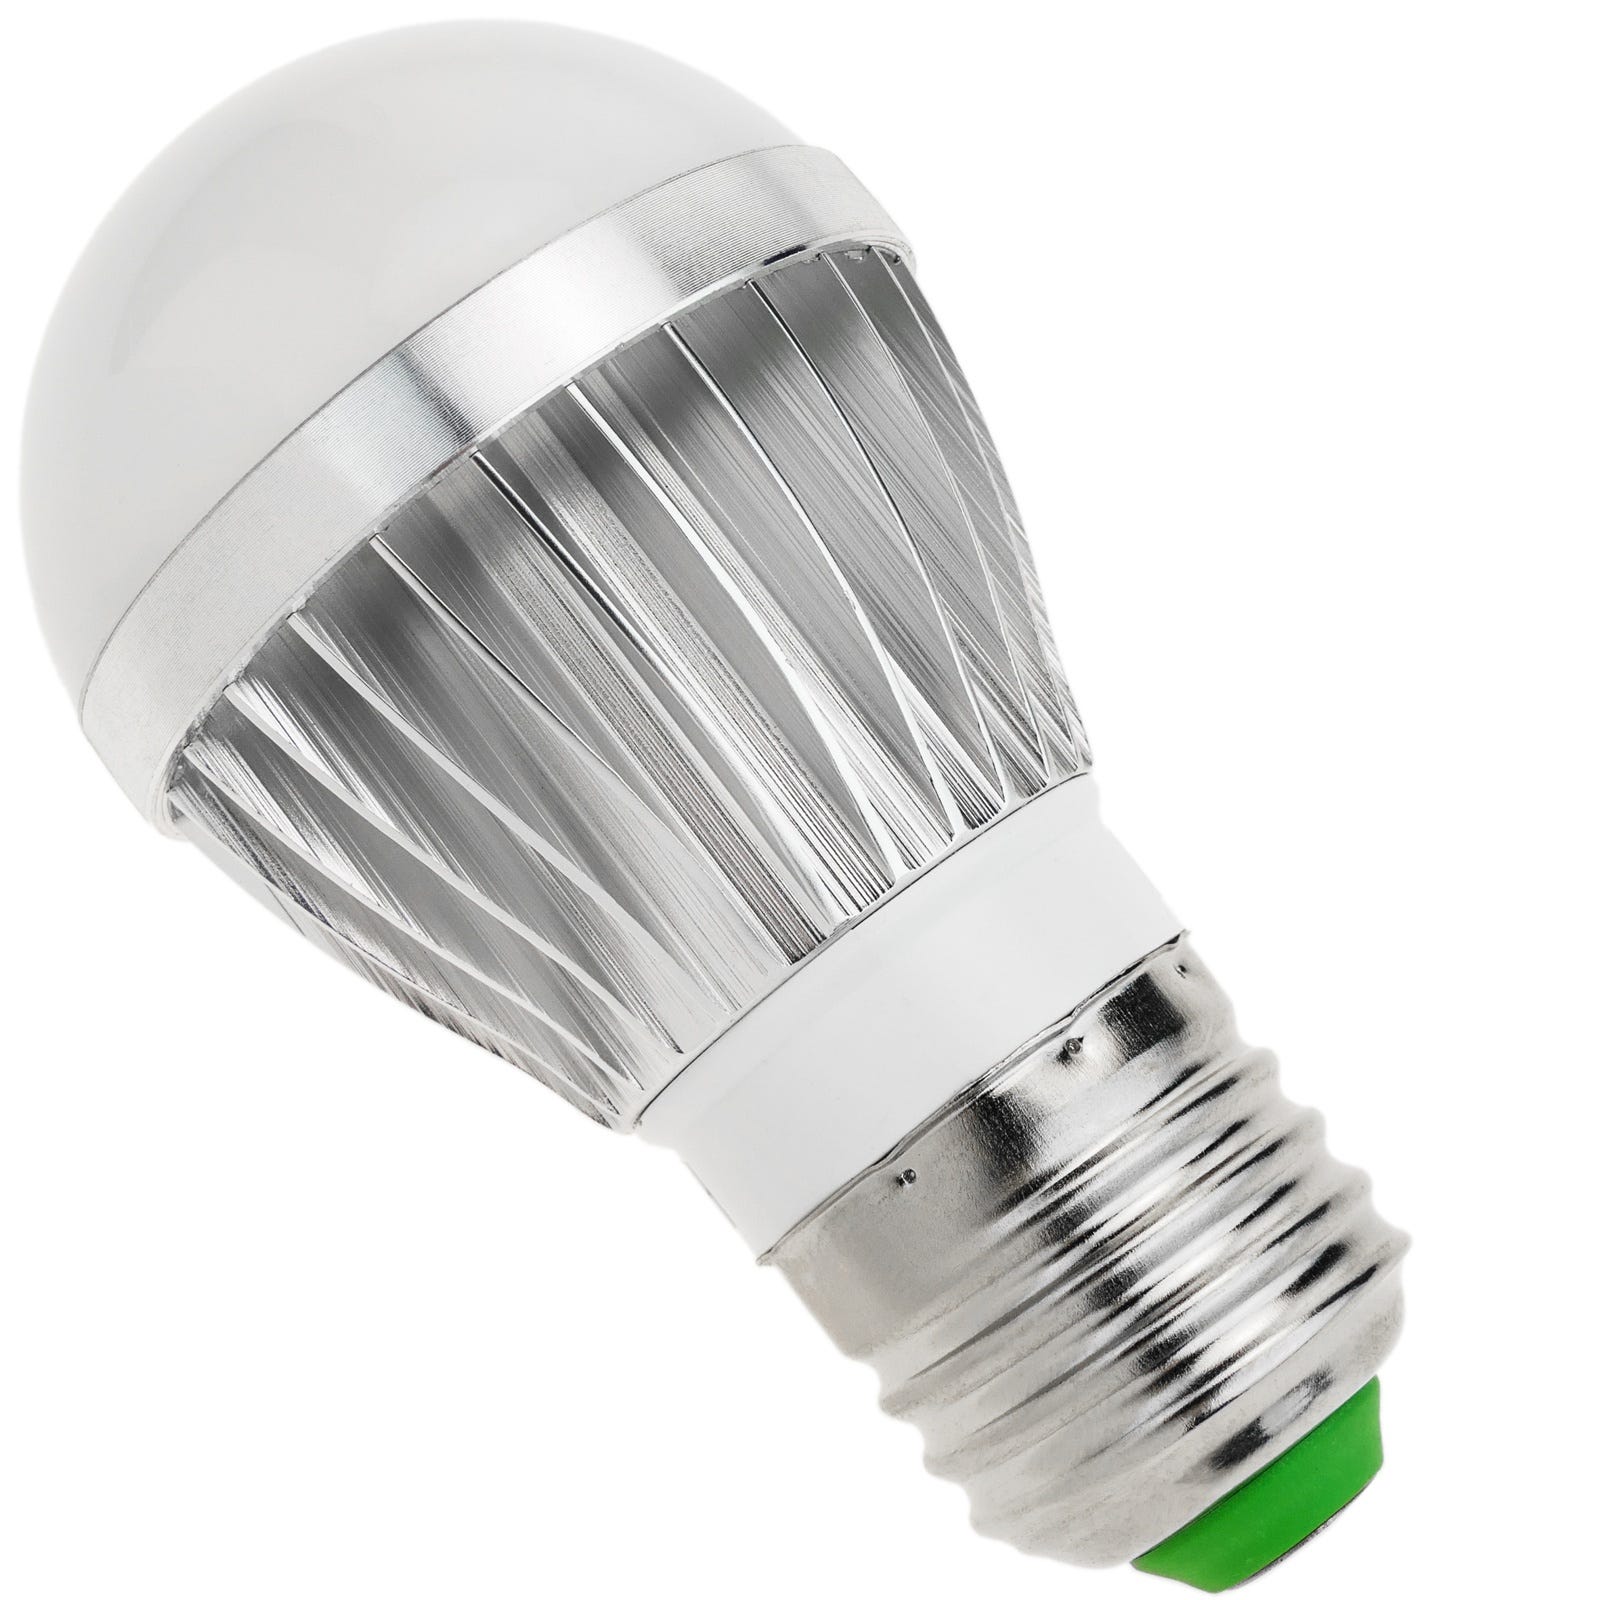 Optimiser son éclairage : ampoules incandescentes, basse conso